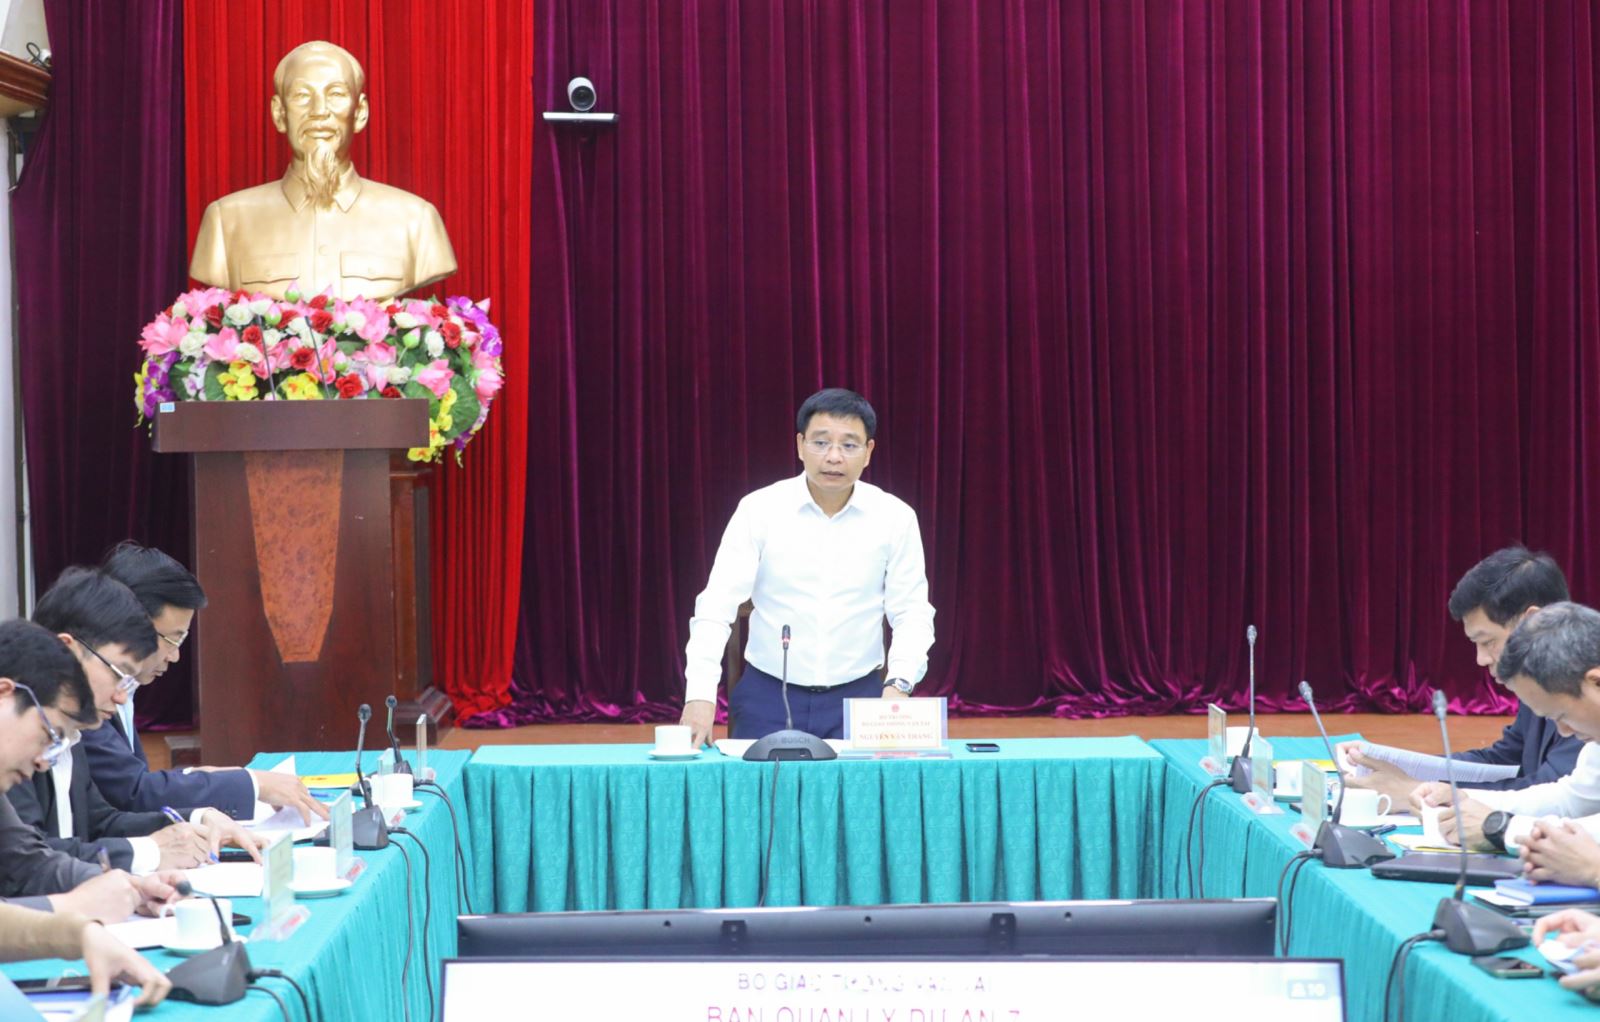 Bộ trưởng Nguyễn Văn Thắng chủ trì giao ban thường kỳ, chỉ đạo nhiều nội dung quan trọng